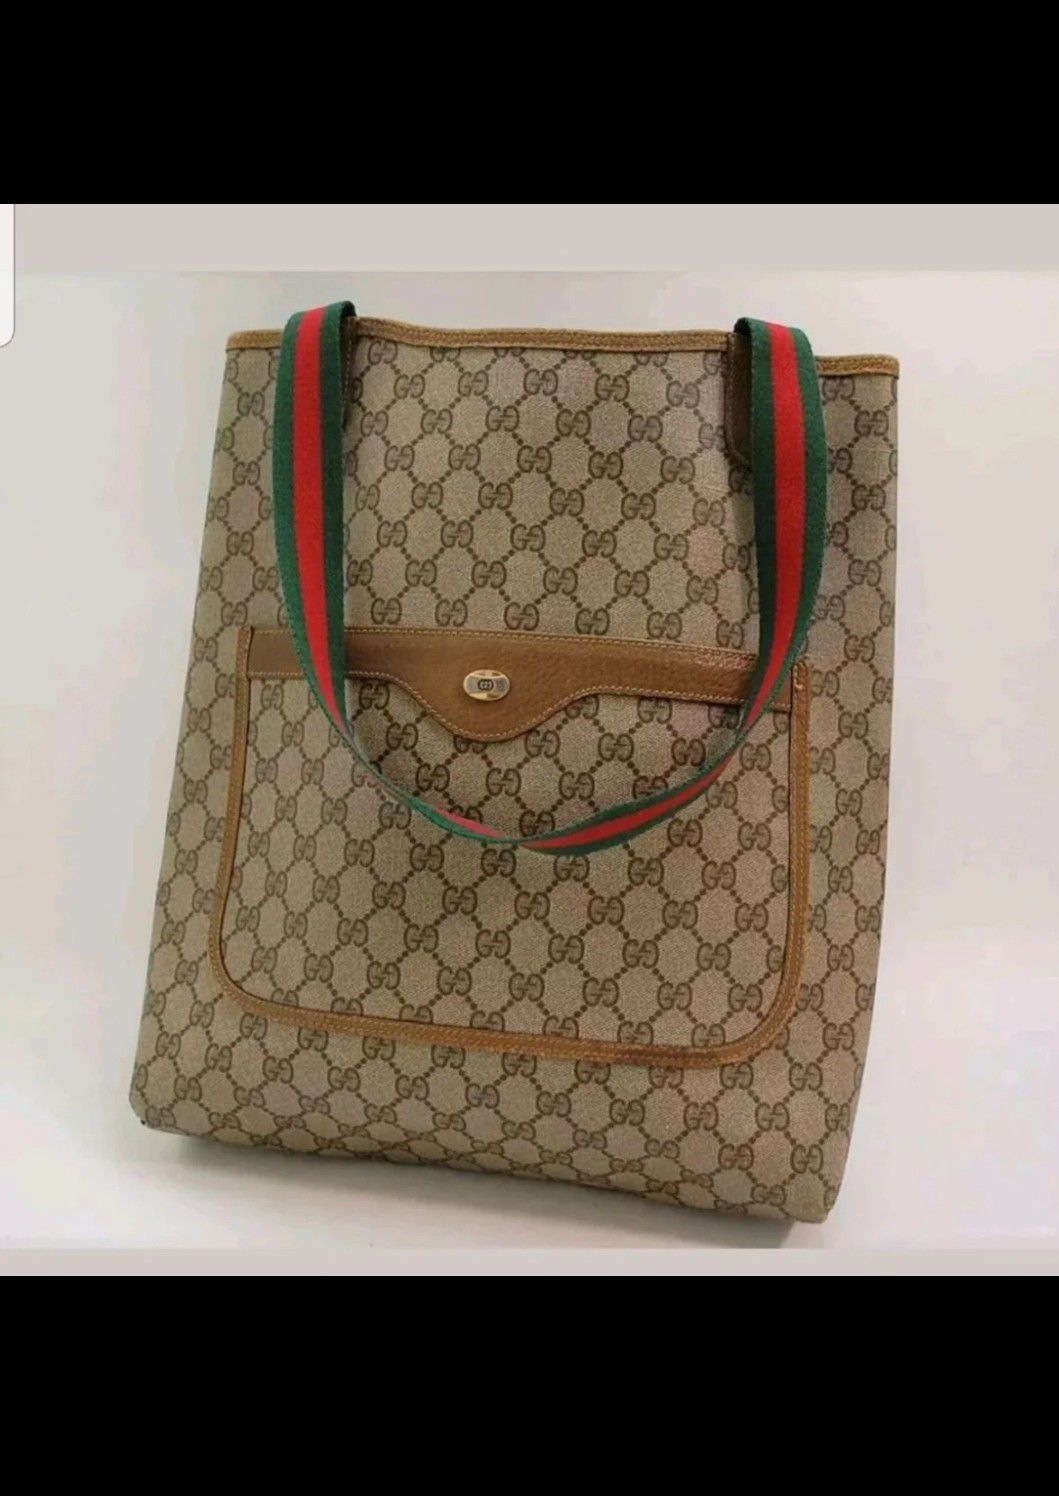 $1500! Aurh Gucci tote bag